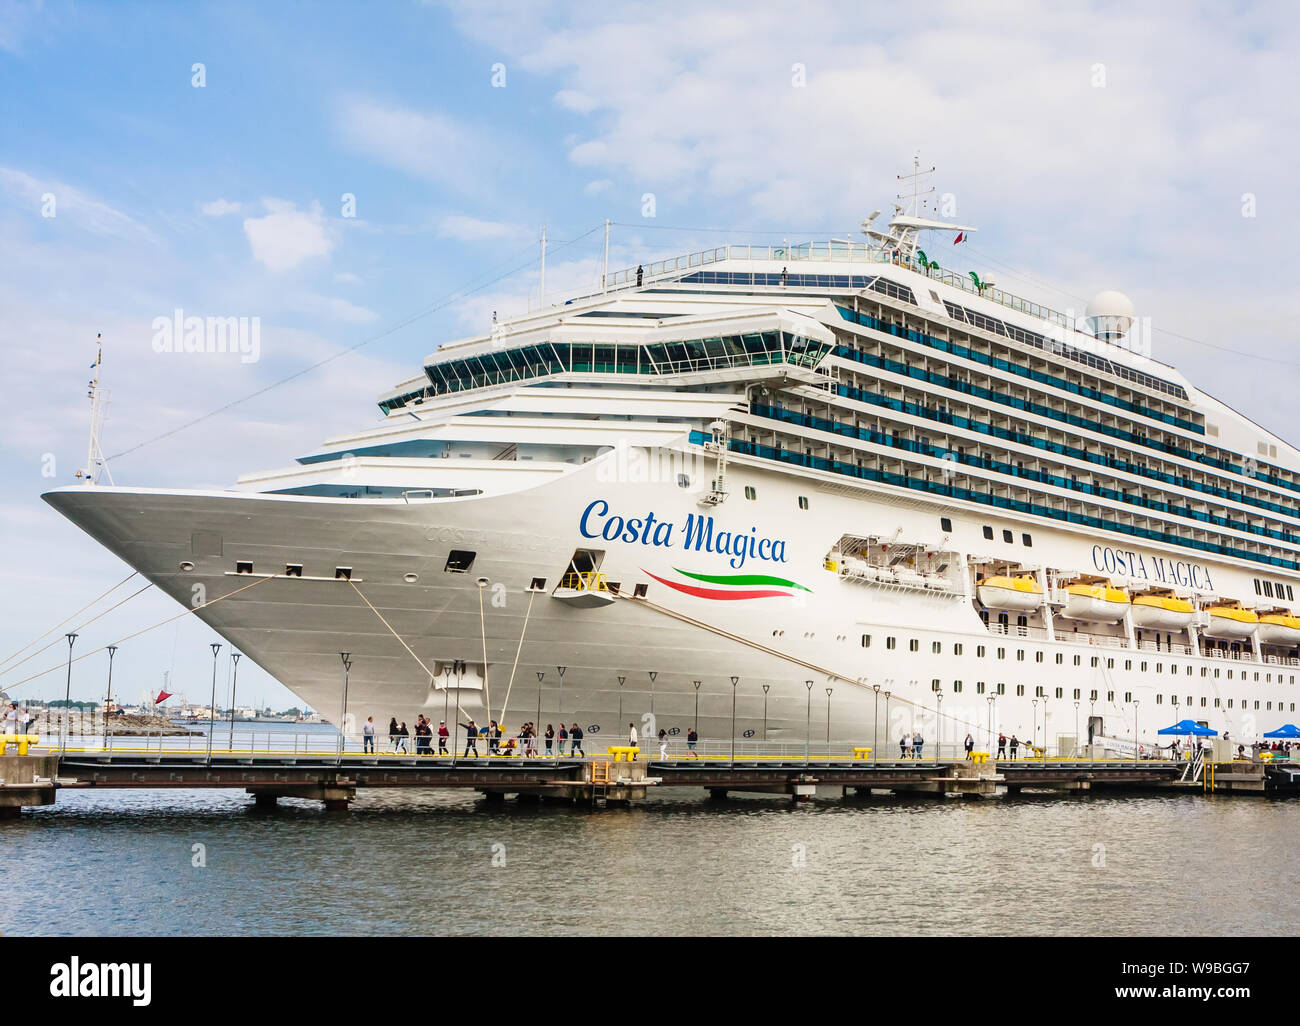 Close-up de lujo crucero Costa Magica, El nombre del barco está escrito  sobre la banda de estribor, puerto de Tallin. Estonia Fotografía de stock -  Alamy